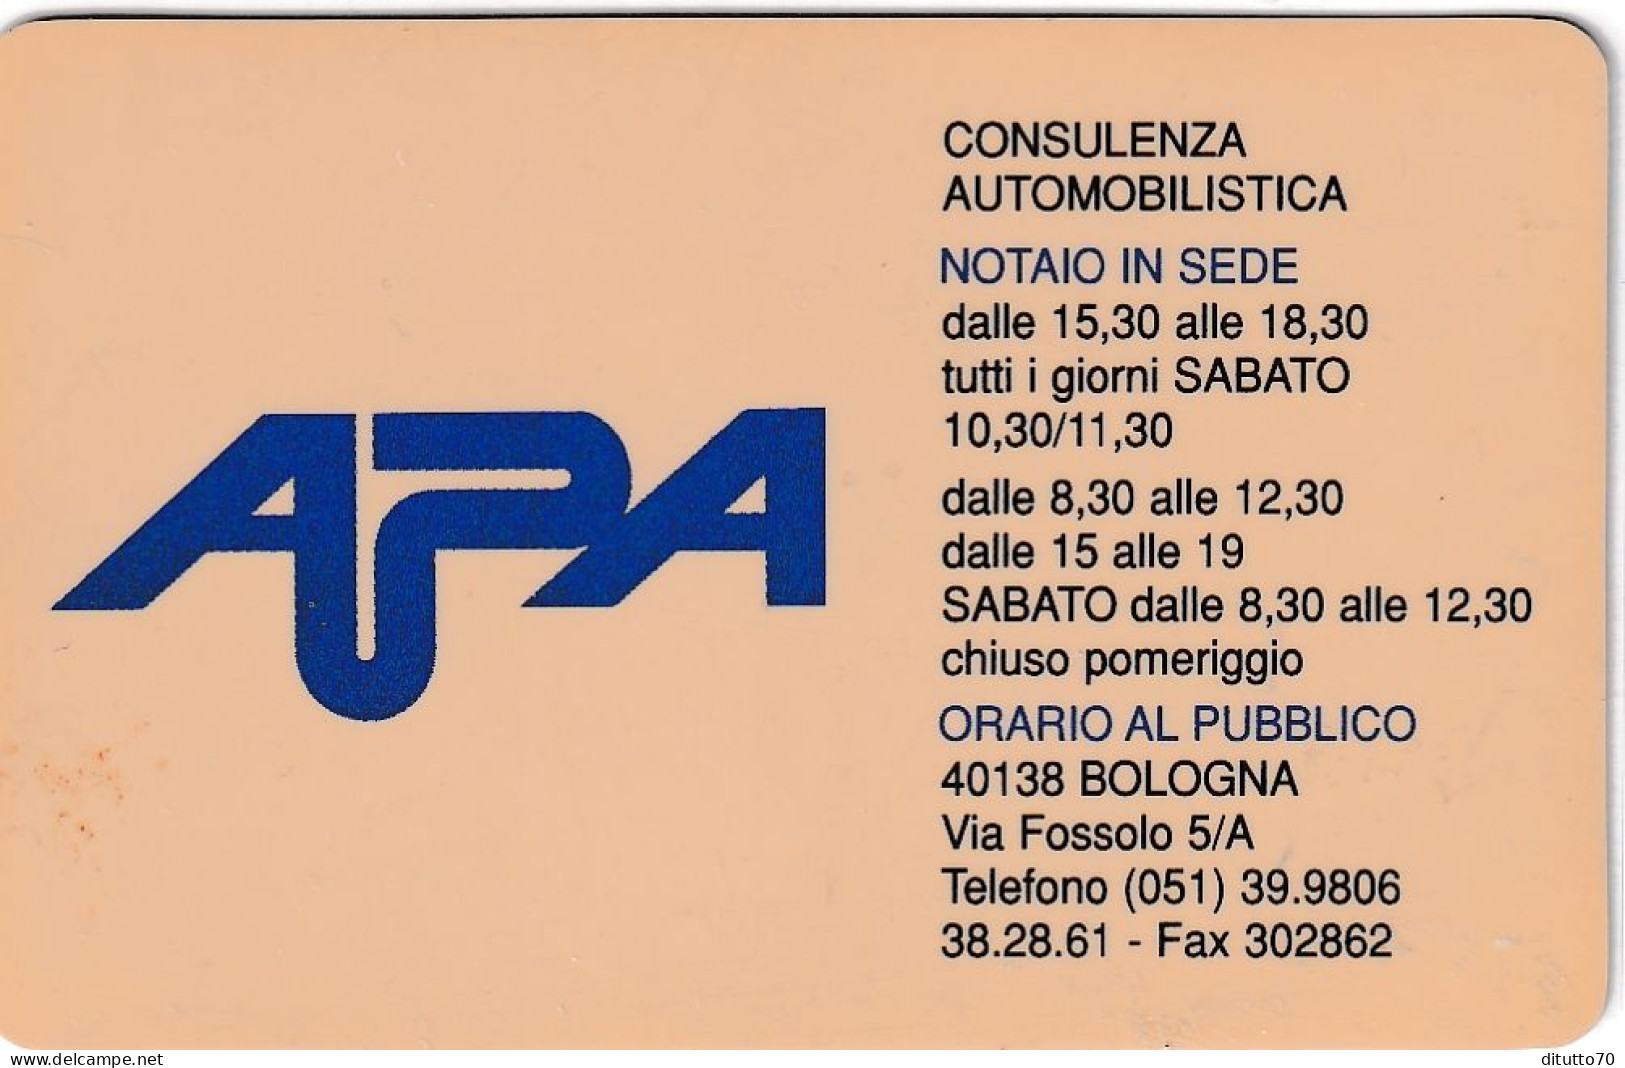 Calendarietto - Apa - Consulenza Automobilistica - Bologna - Anno 1998 - Klein Formaat: 1991-00